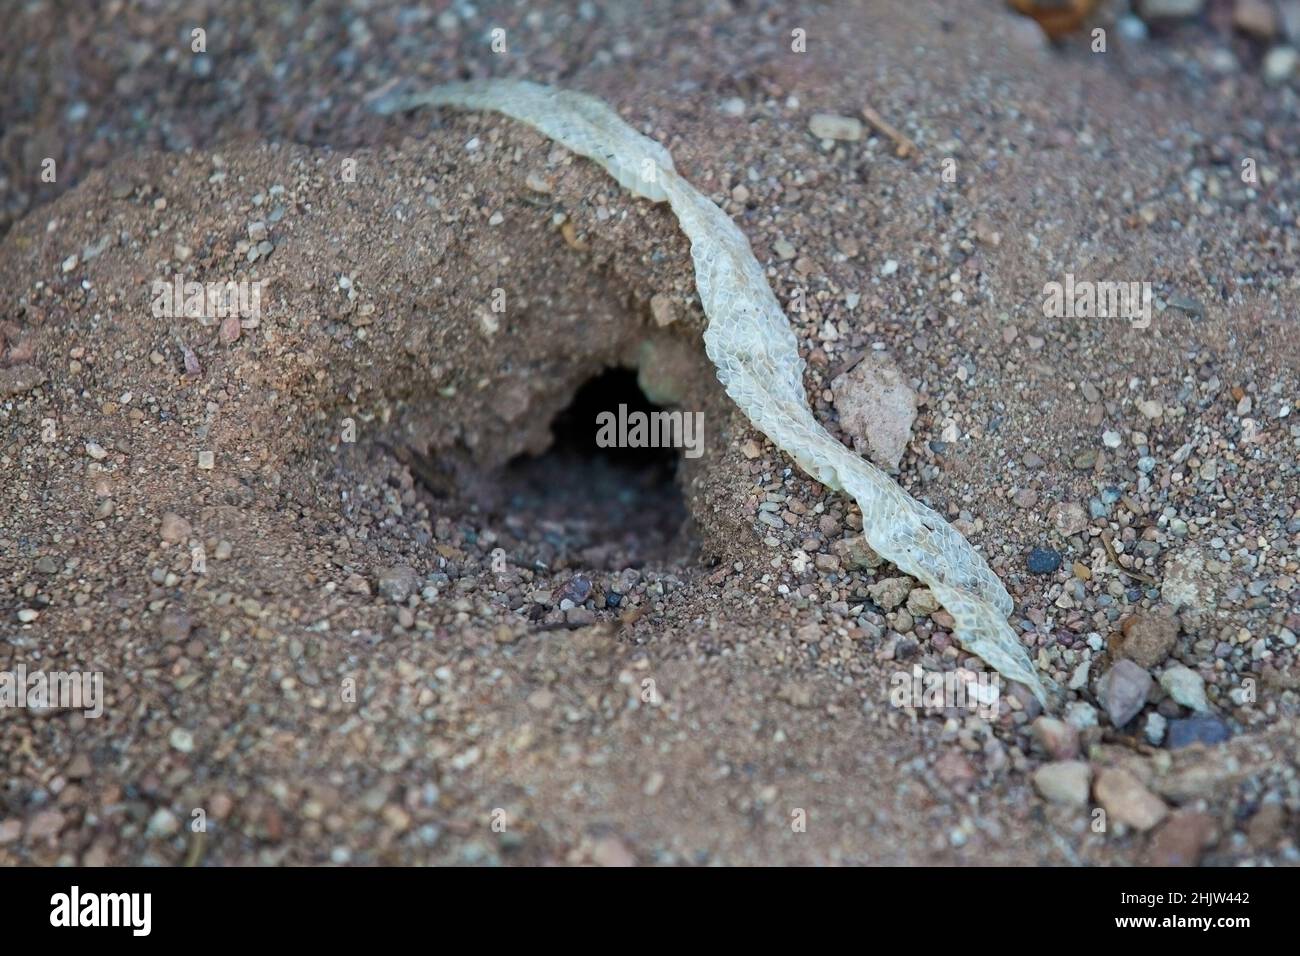 Shedded snake skin beside den in Sonoran desert. Stock Photo